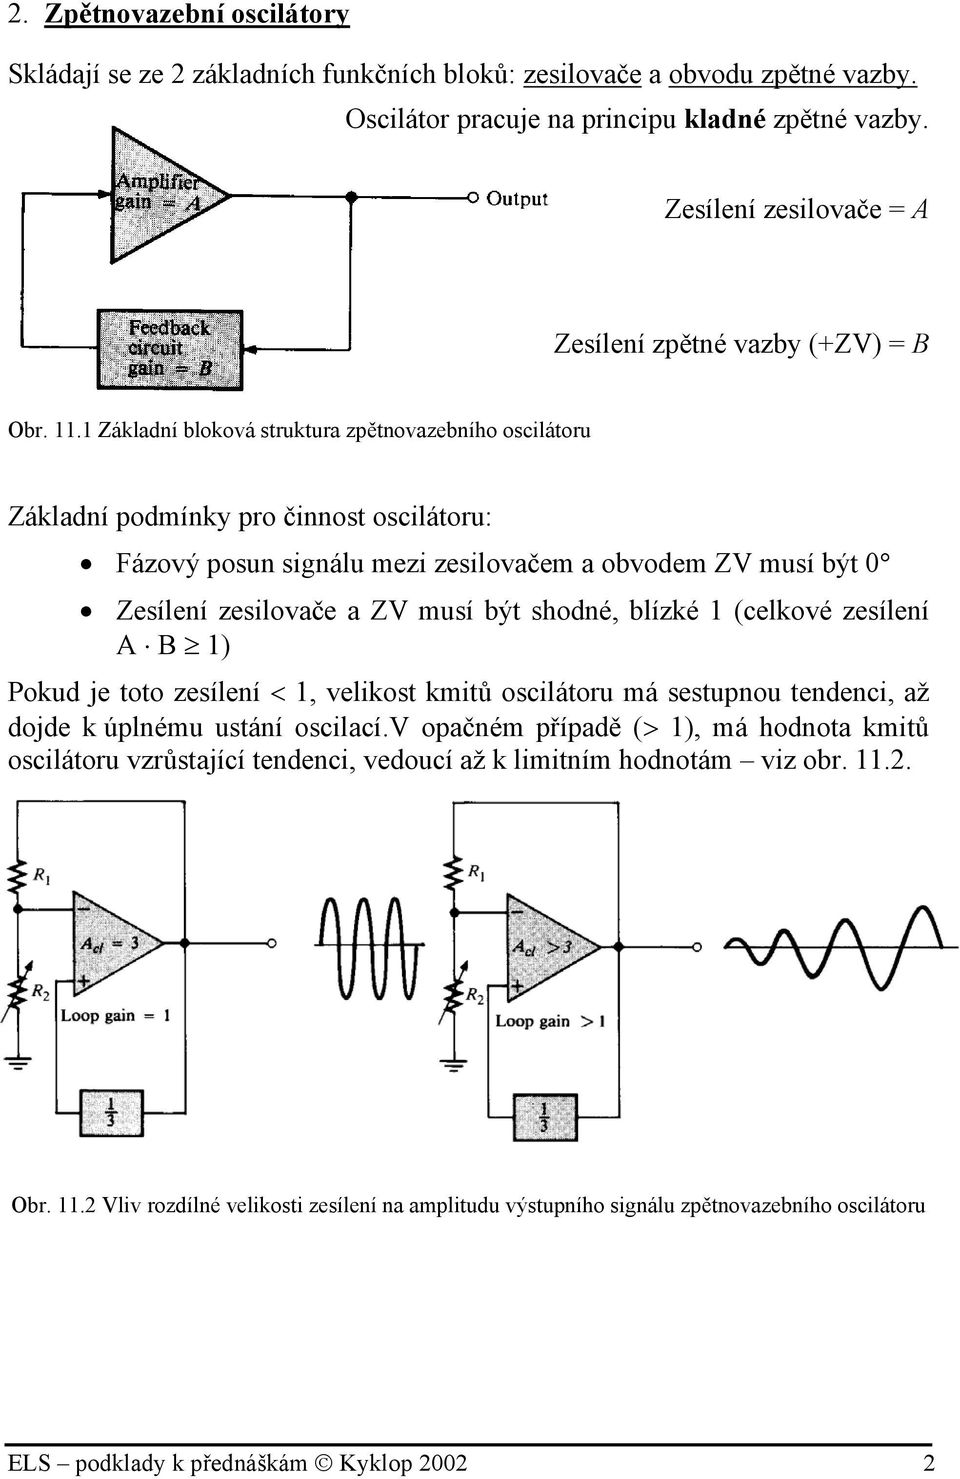 . Základní bloková struktura zpětnovazebního oscilátoru Základní podmínky pro činnost oscilátoru: Fázový posun signálu mezi zesilovačem a obvodem ZV musí být 0 Zesílení zesilovače a ZV musí být